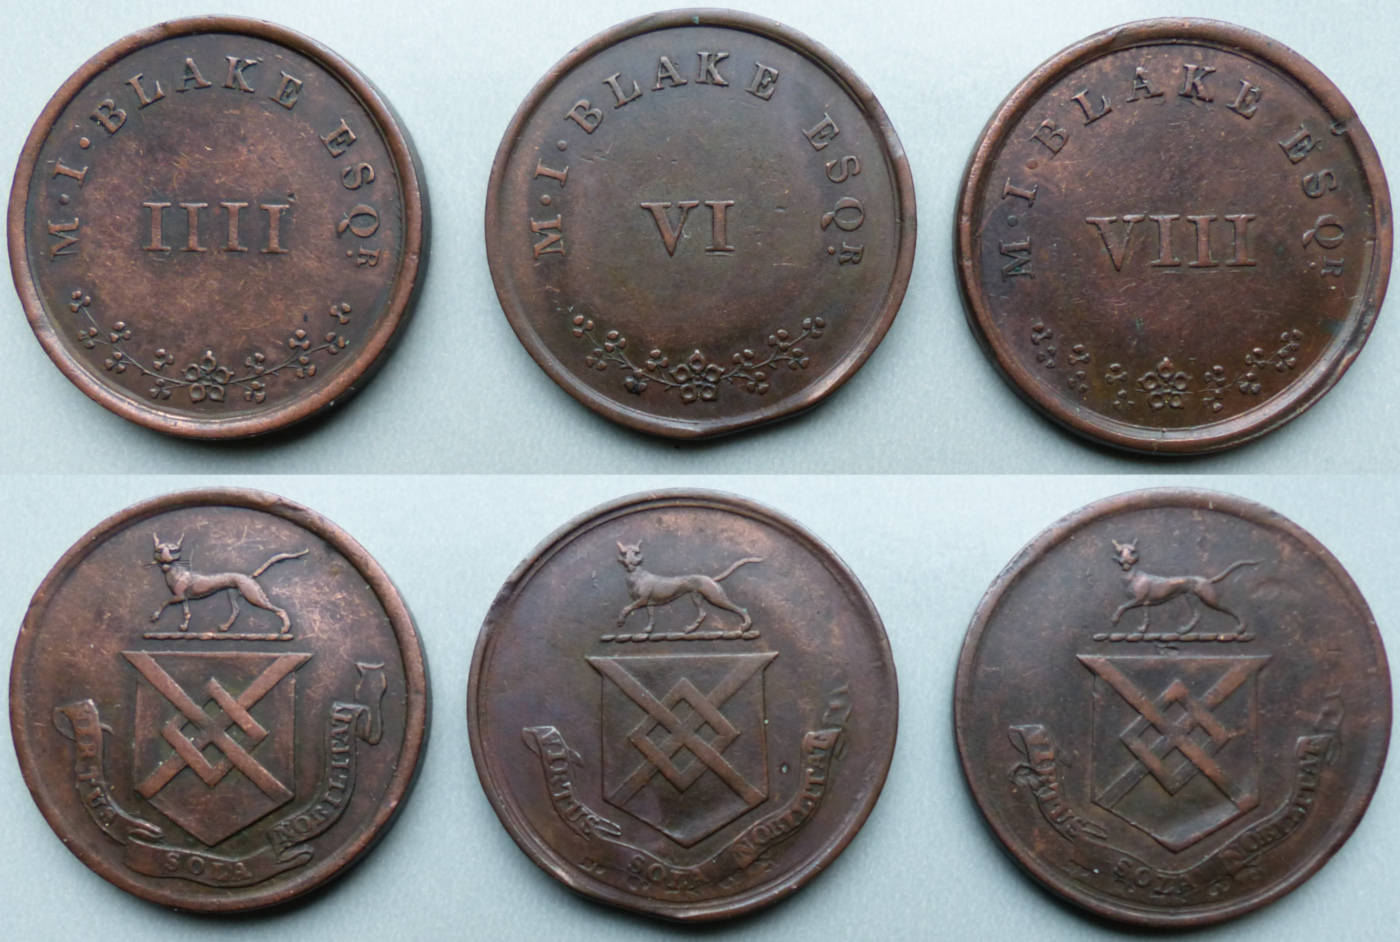 Ireland, Galway, Ballyglunin Estate tokens